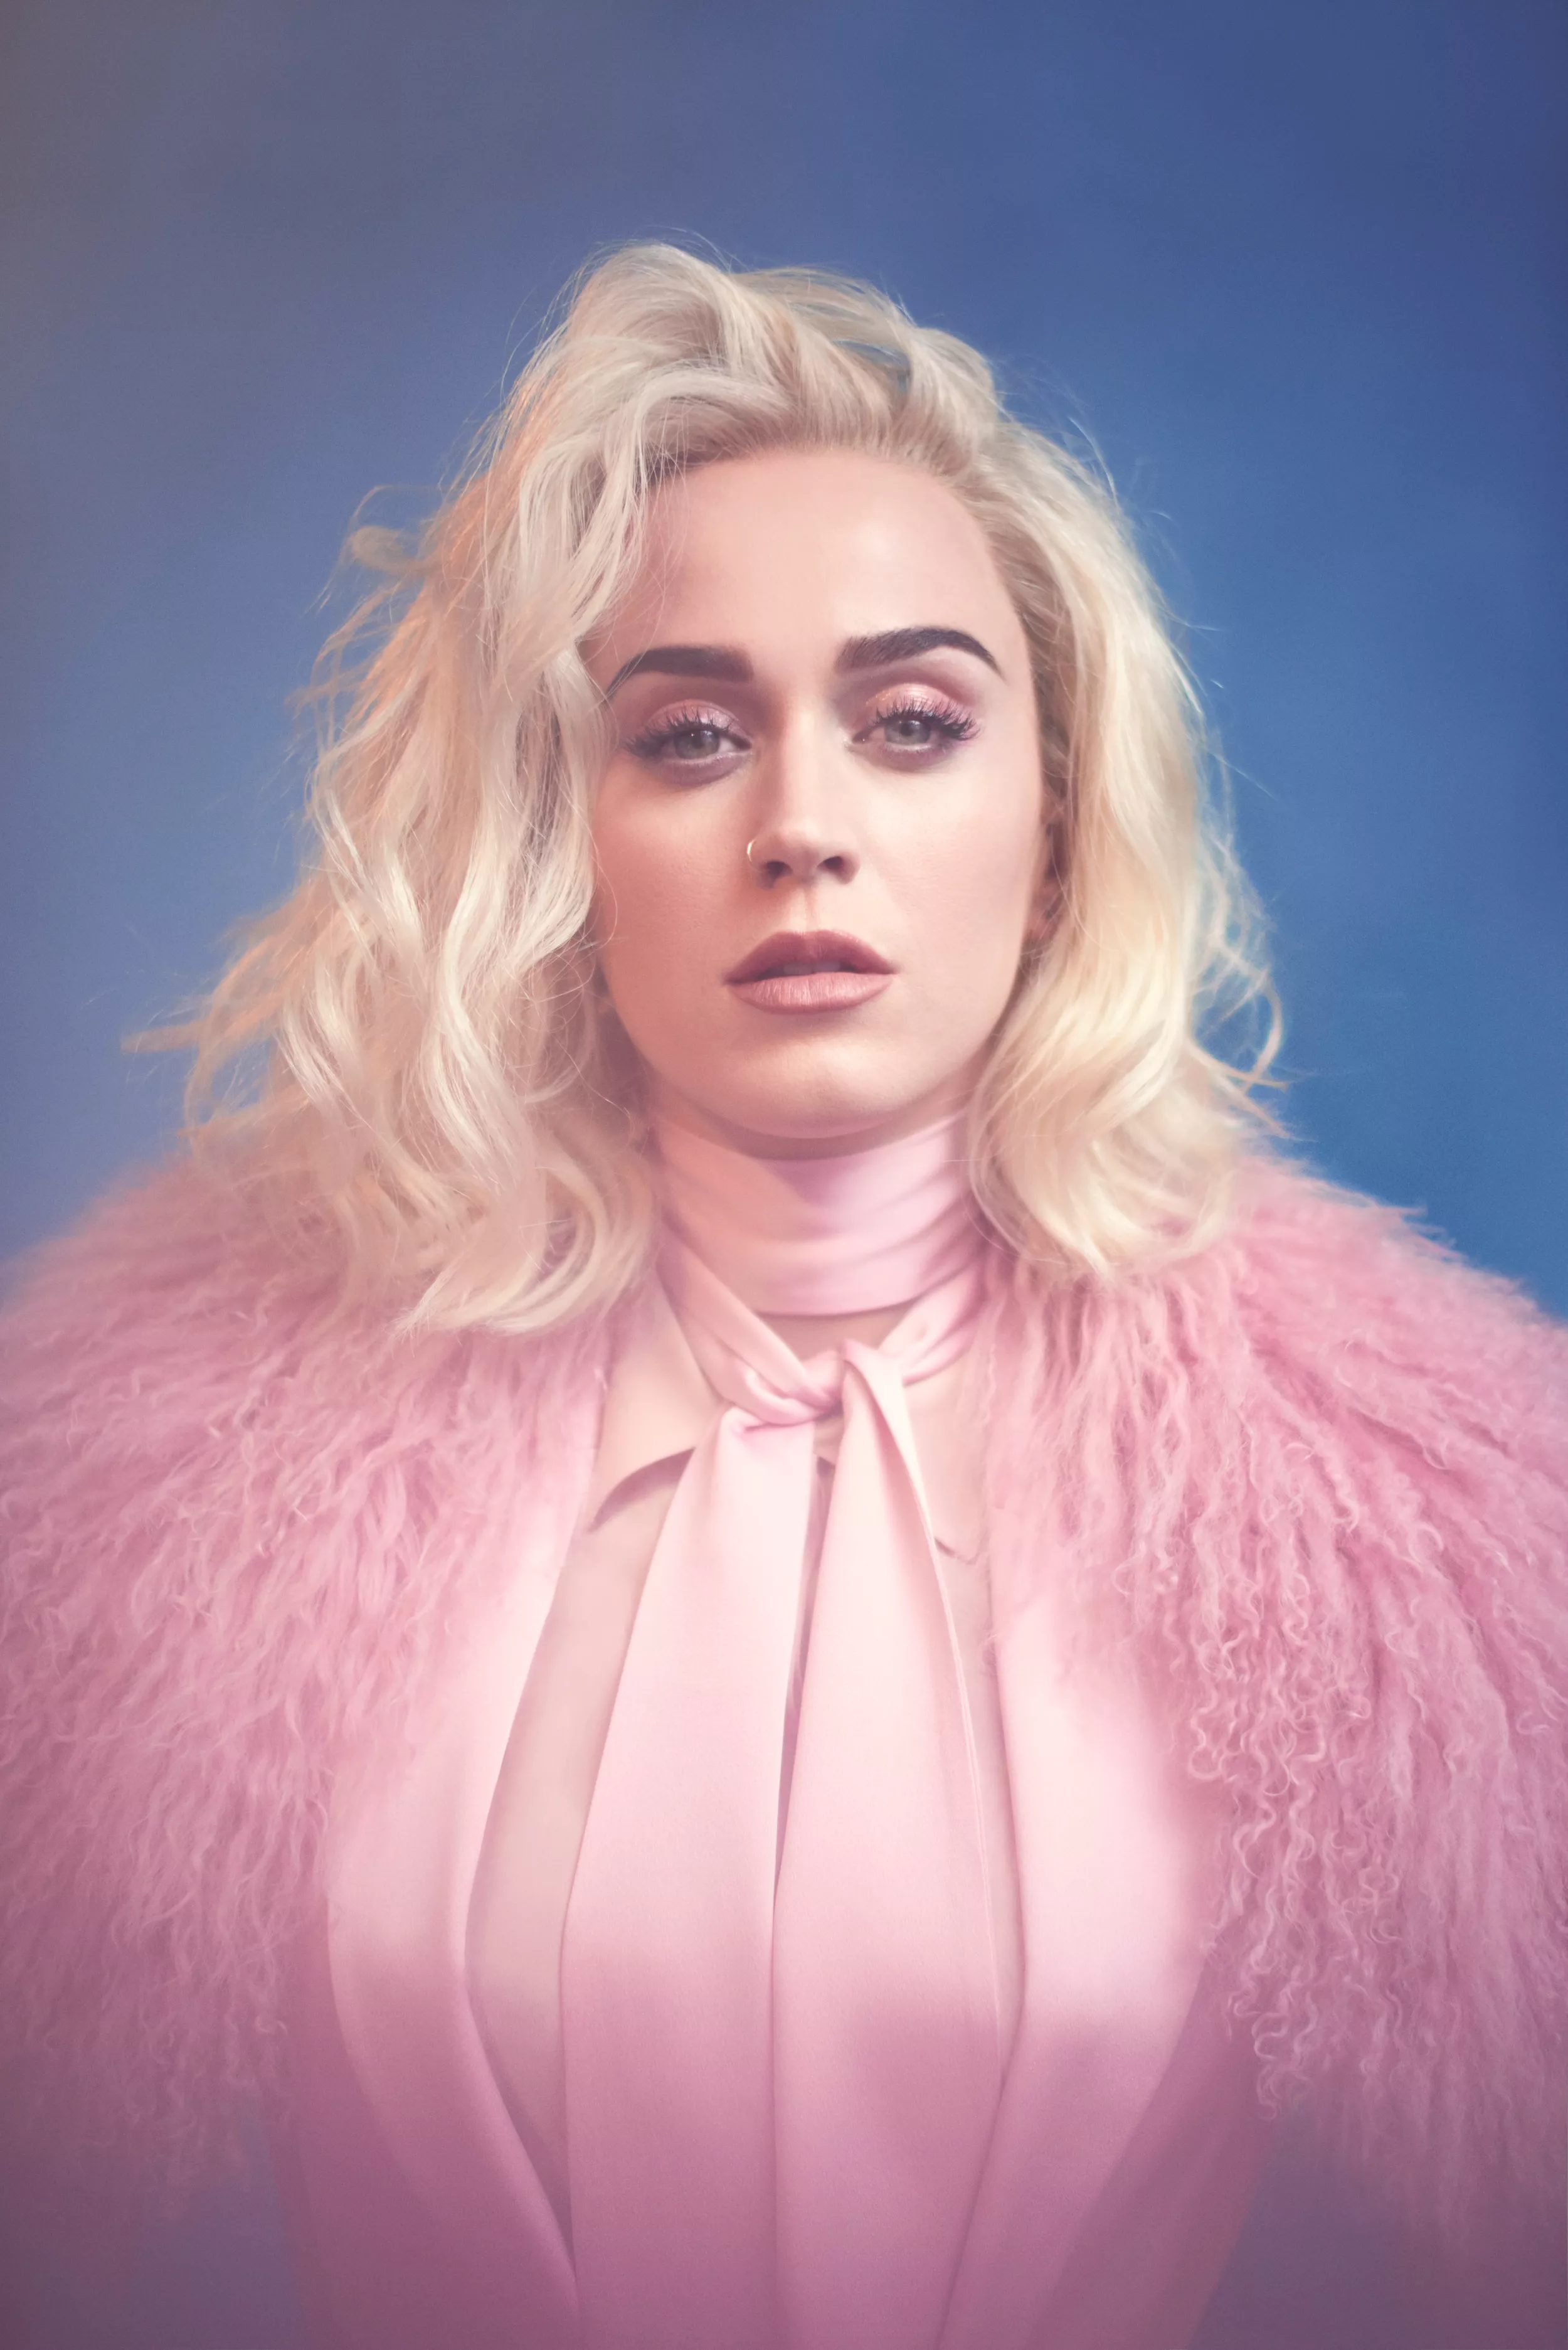 Katy Perry fejler fatalt på fjerde album